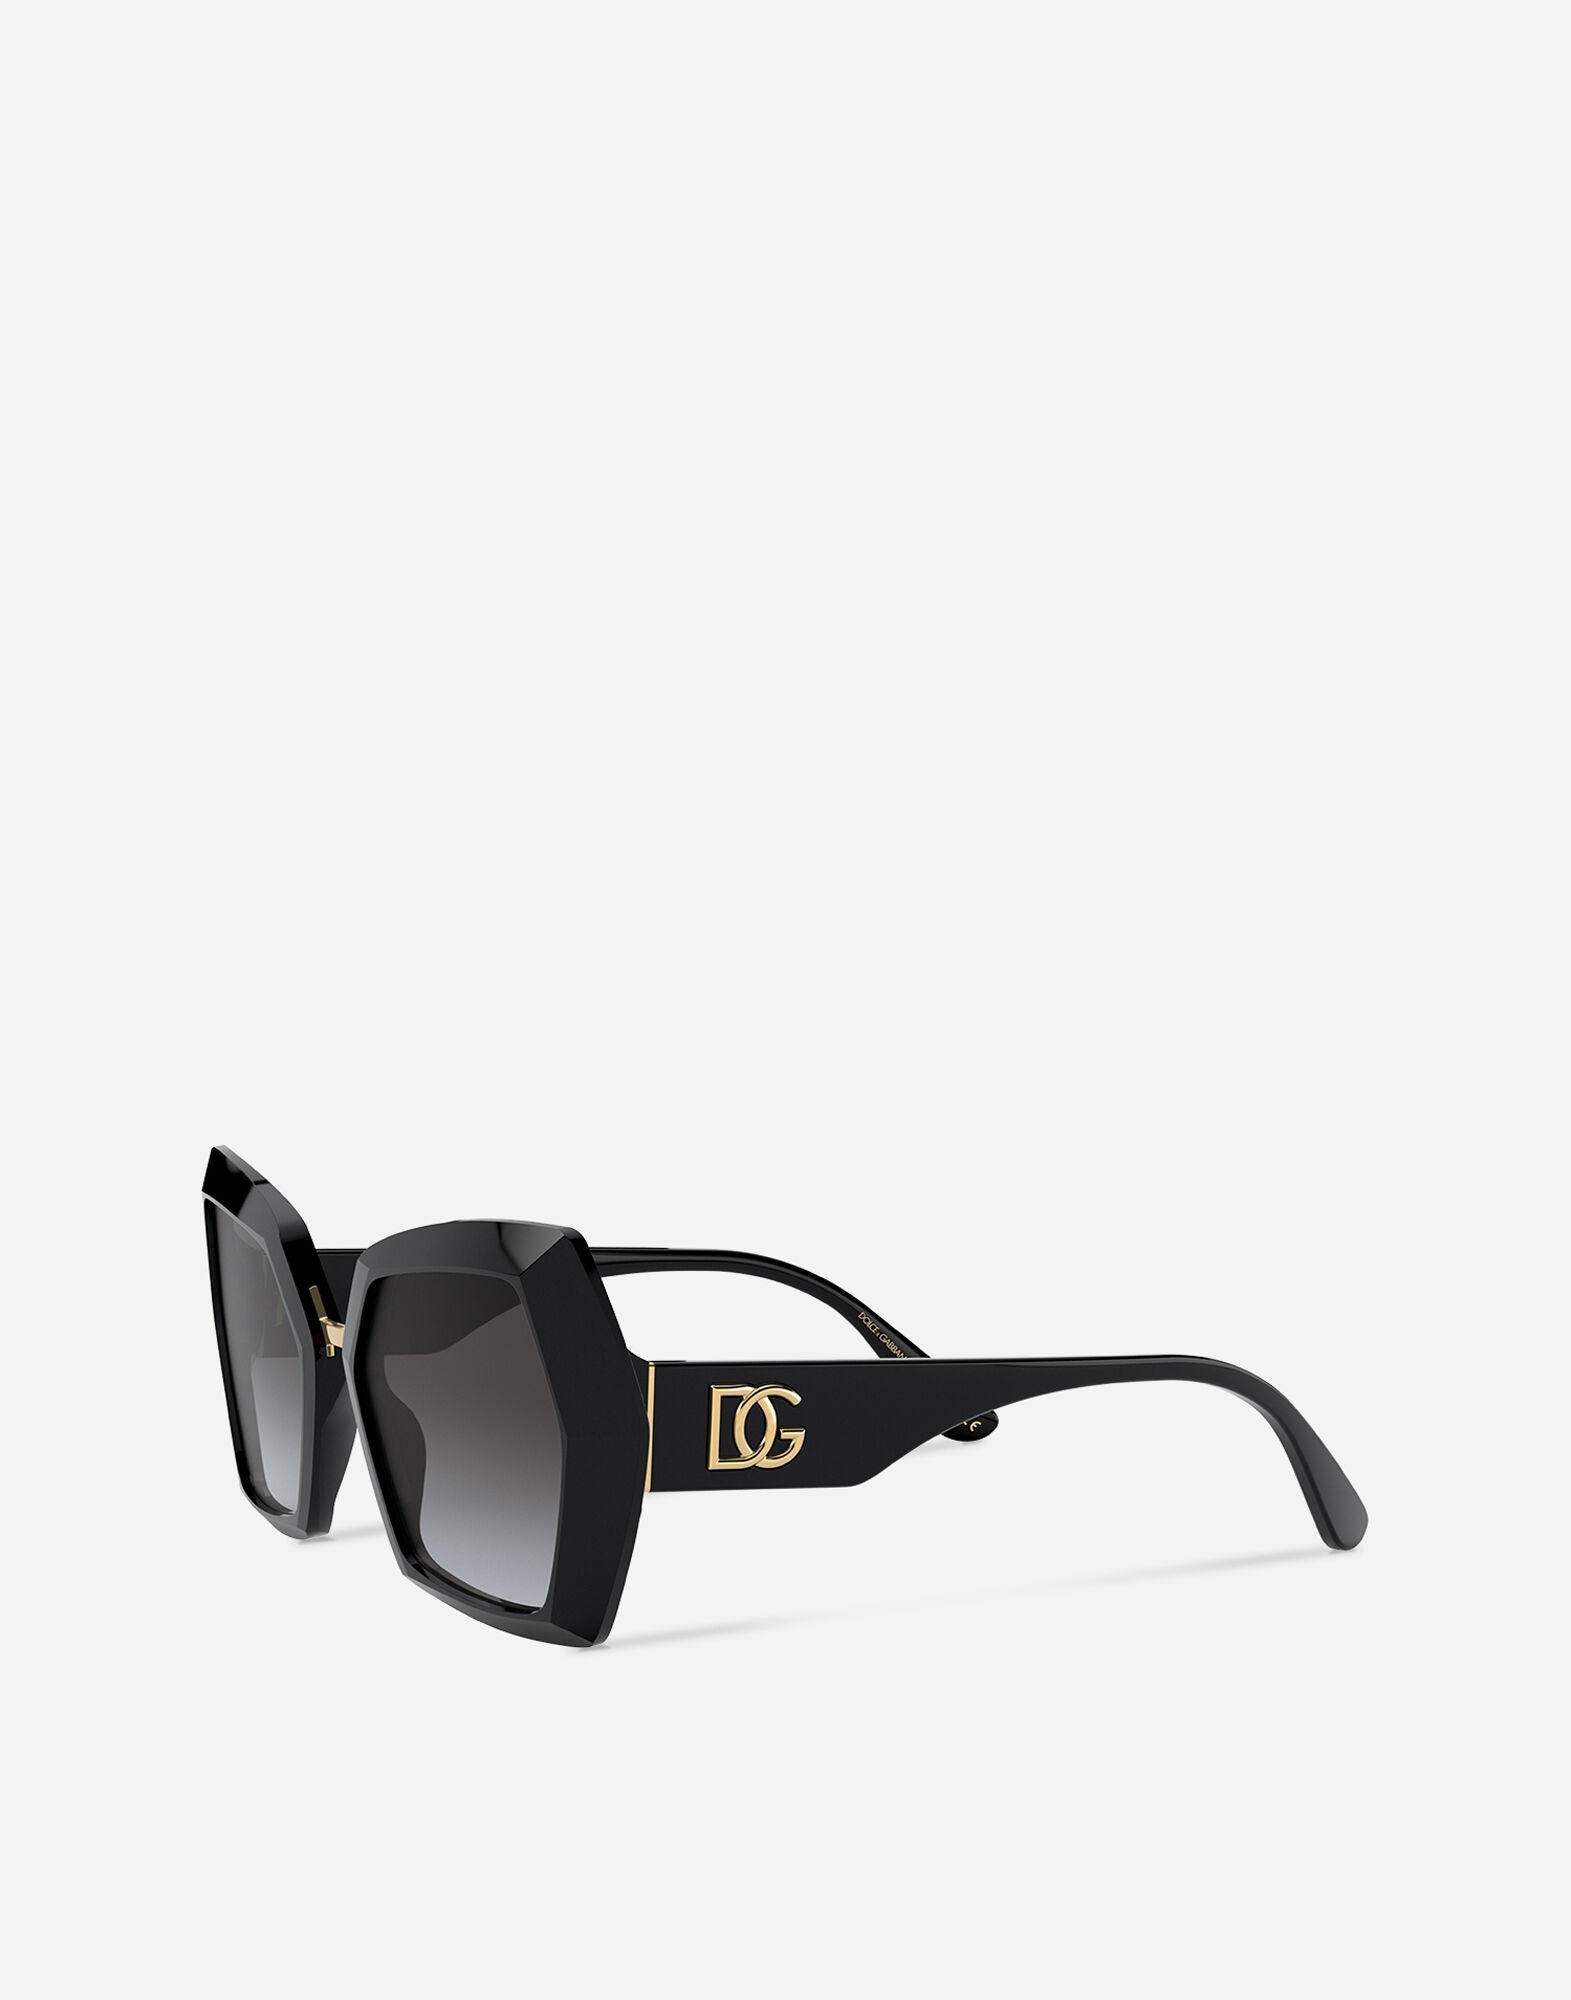 Mắt kính đen to bản Dolce & Gabbana